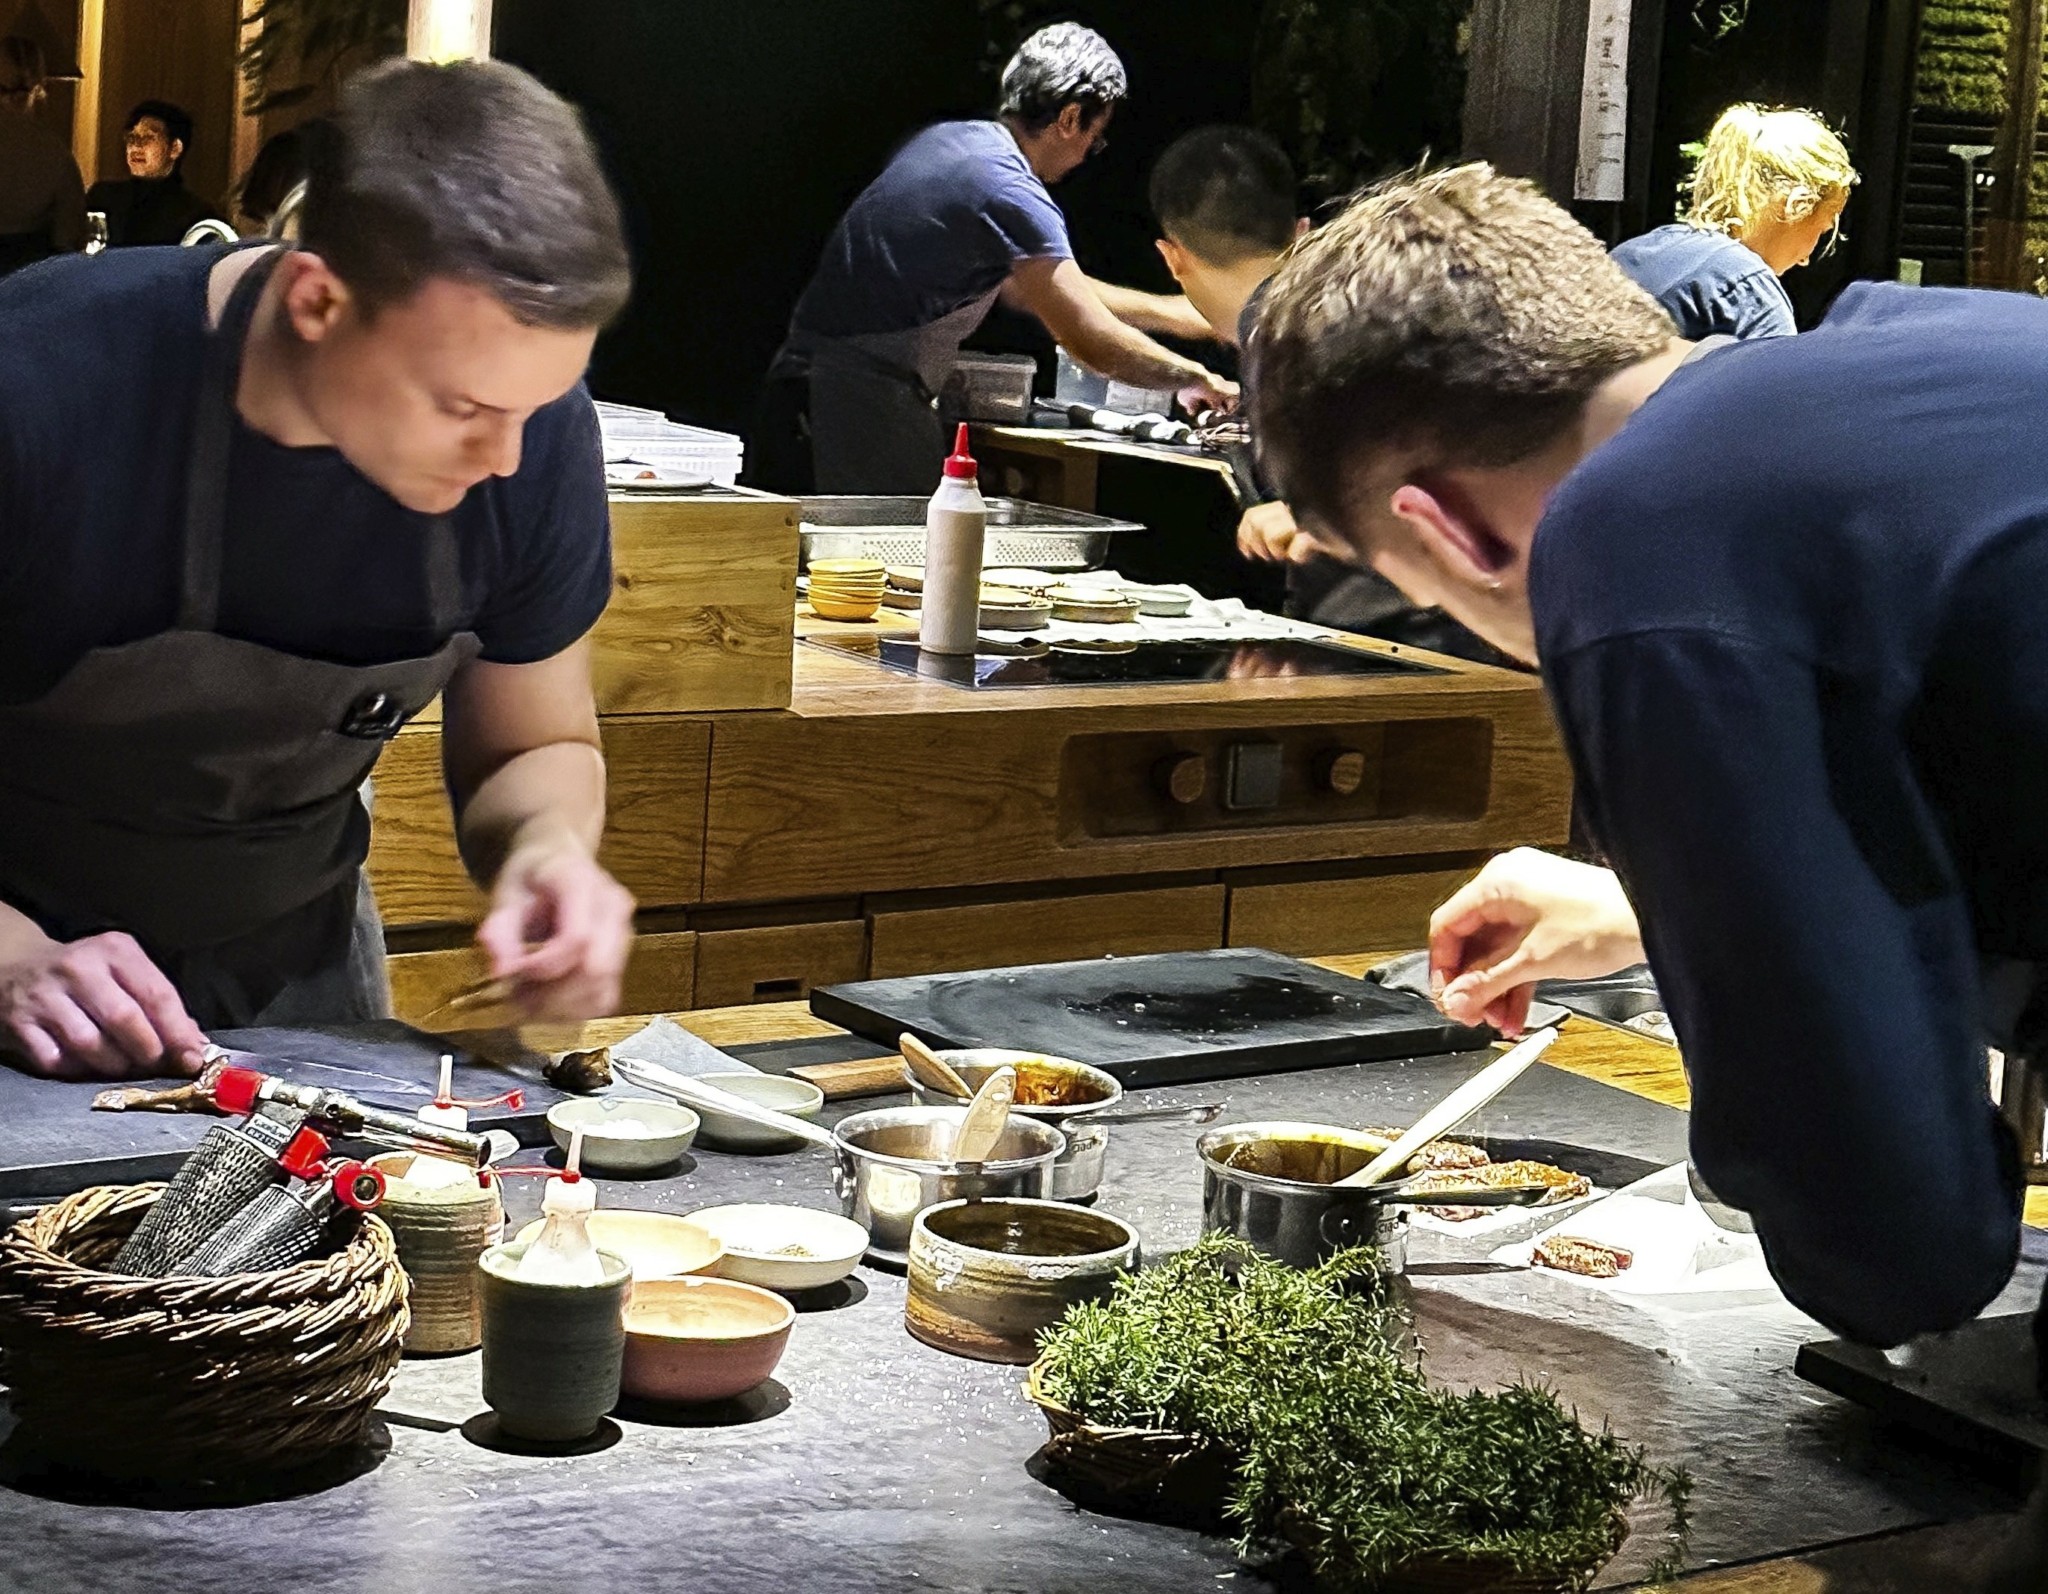 Οσα συμβαίνουν μέσα στο Noma – Δοκιμάζουμε όλα τα πιάτα του τελευταίου μενού του πιο πολυσυζητημένου εστιατορίου στον κόσμο